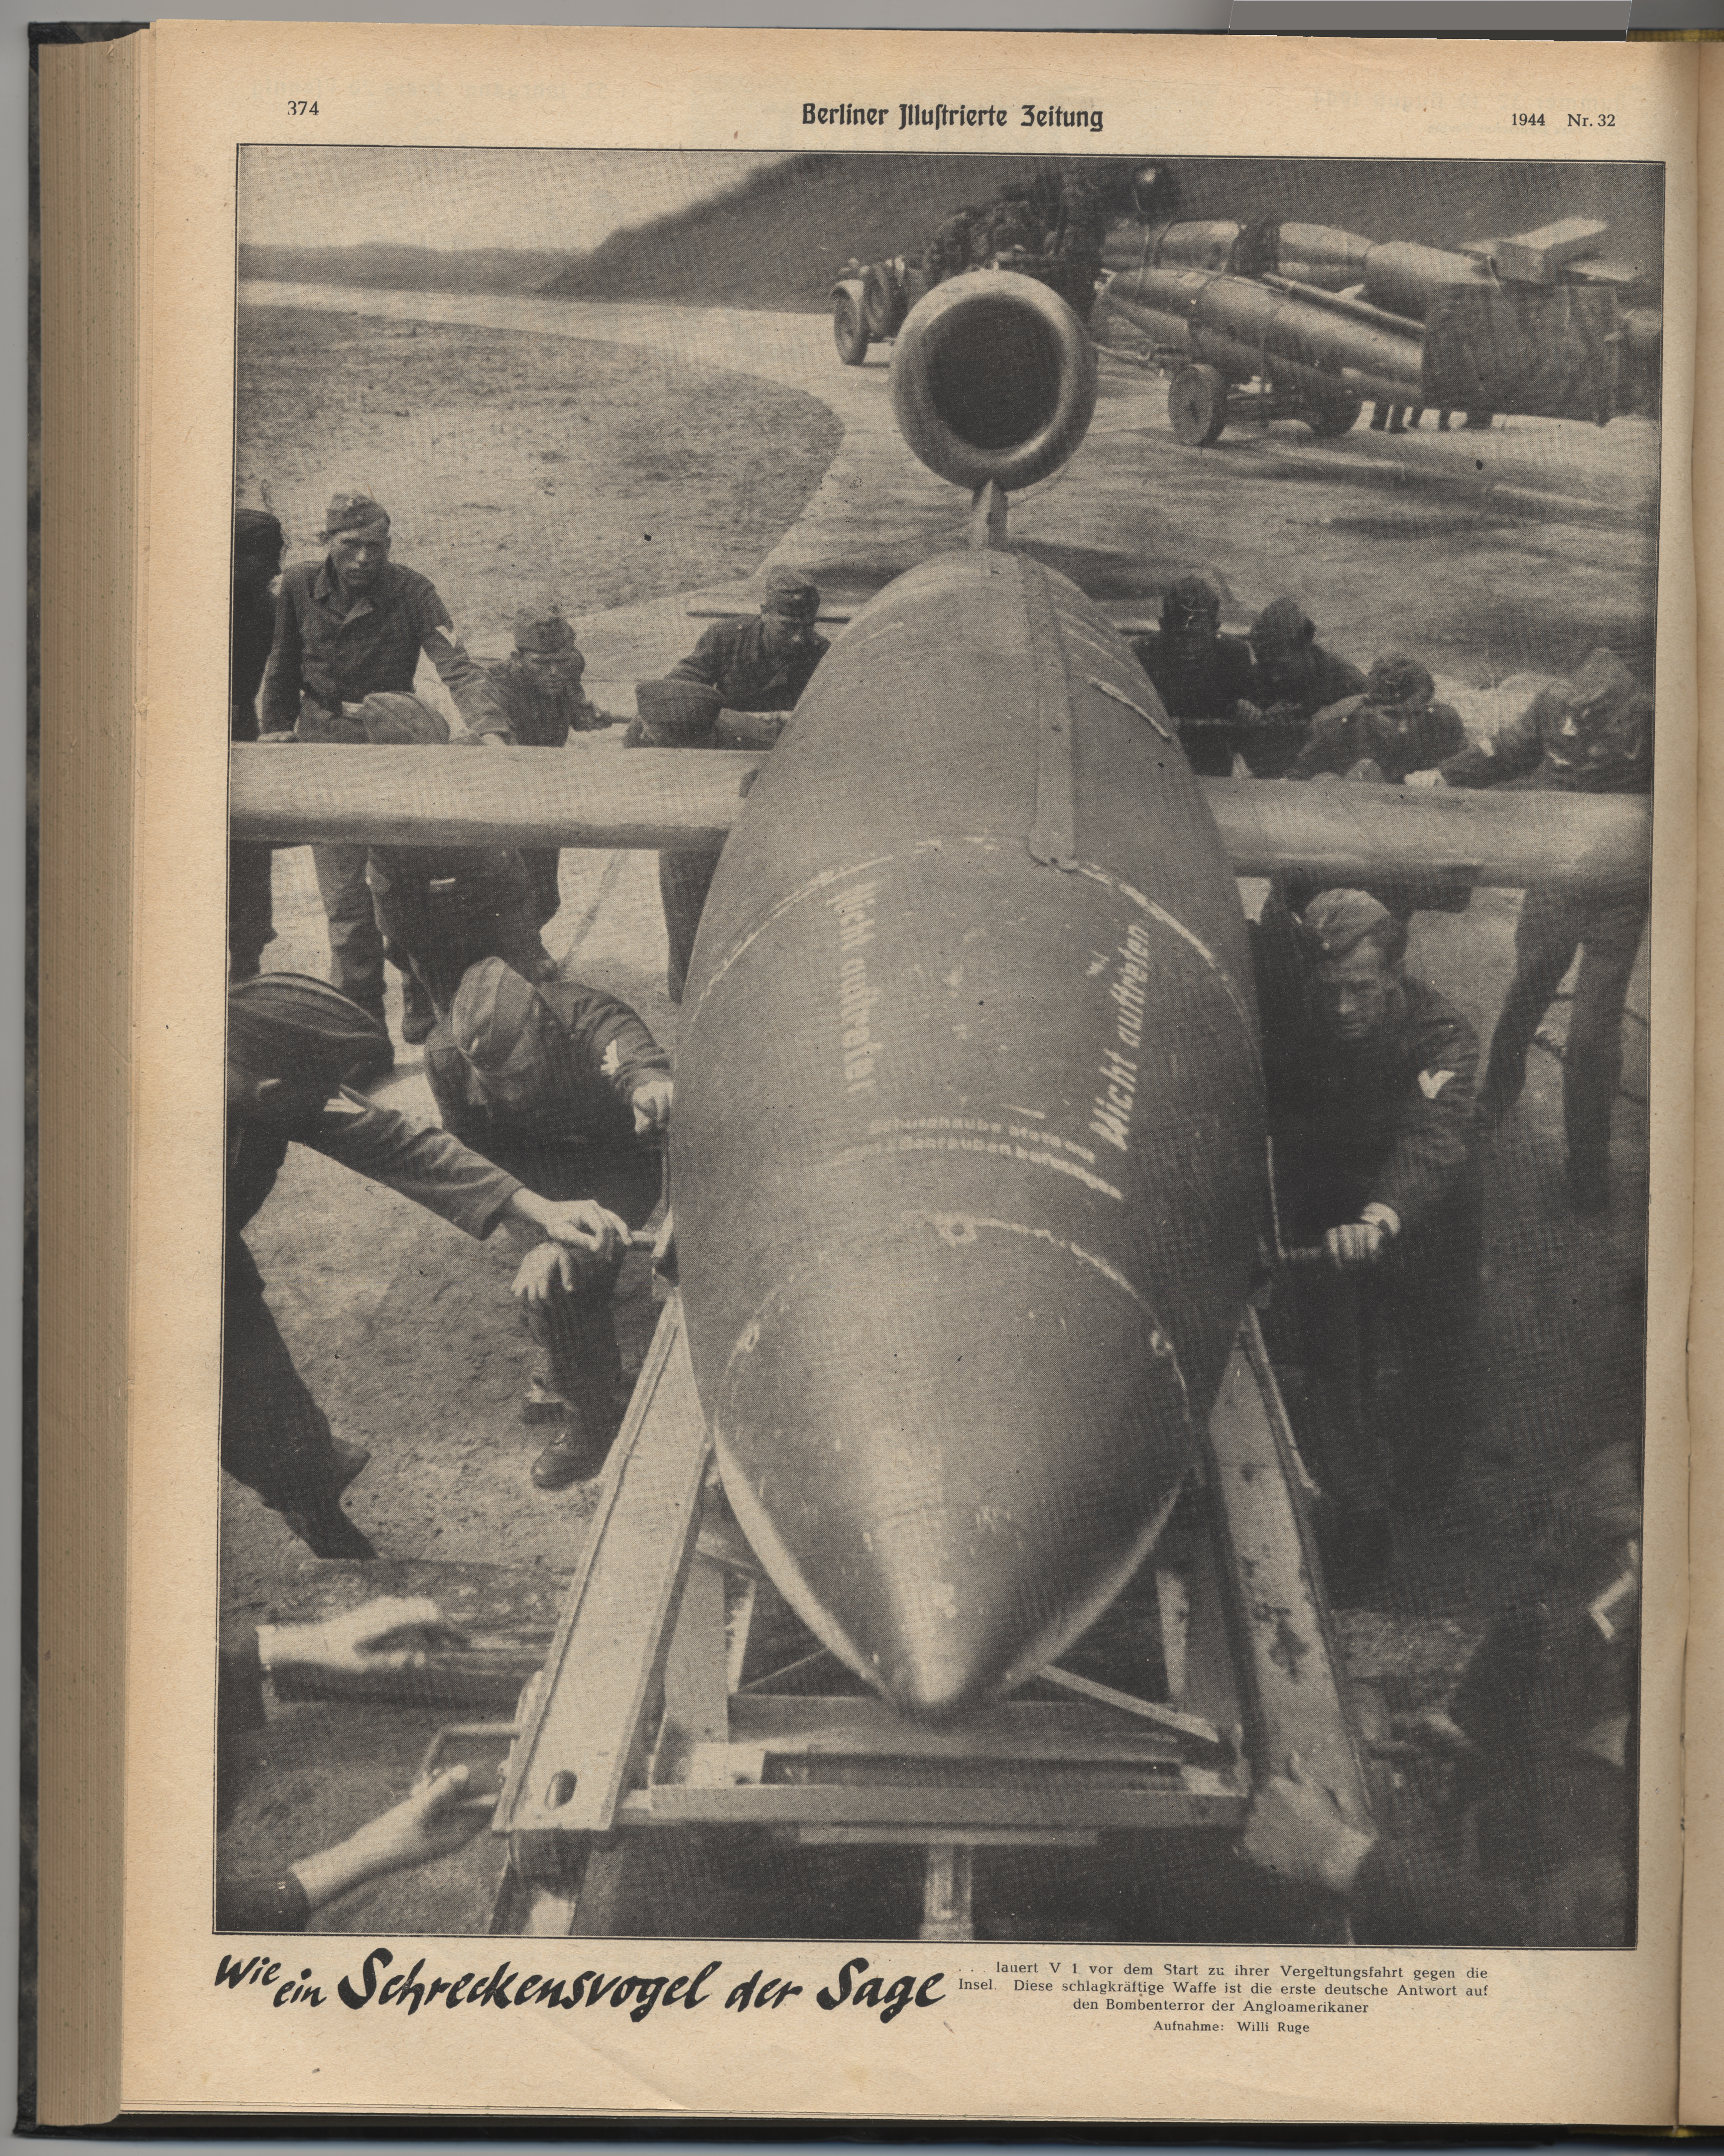 Exponat: Photo: V1-Flugbomben vor dem Start, 1944